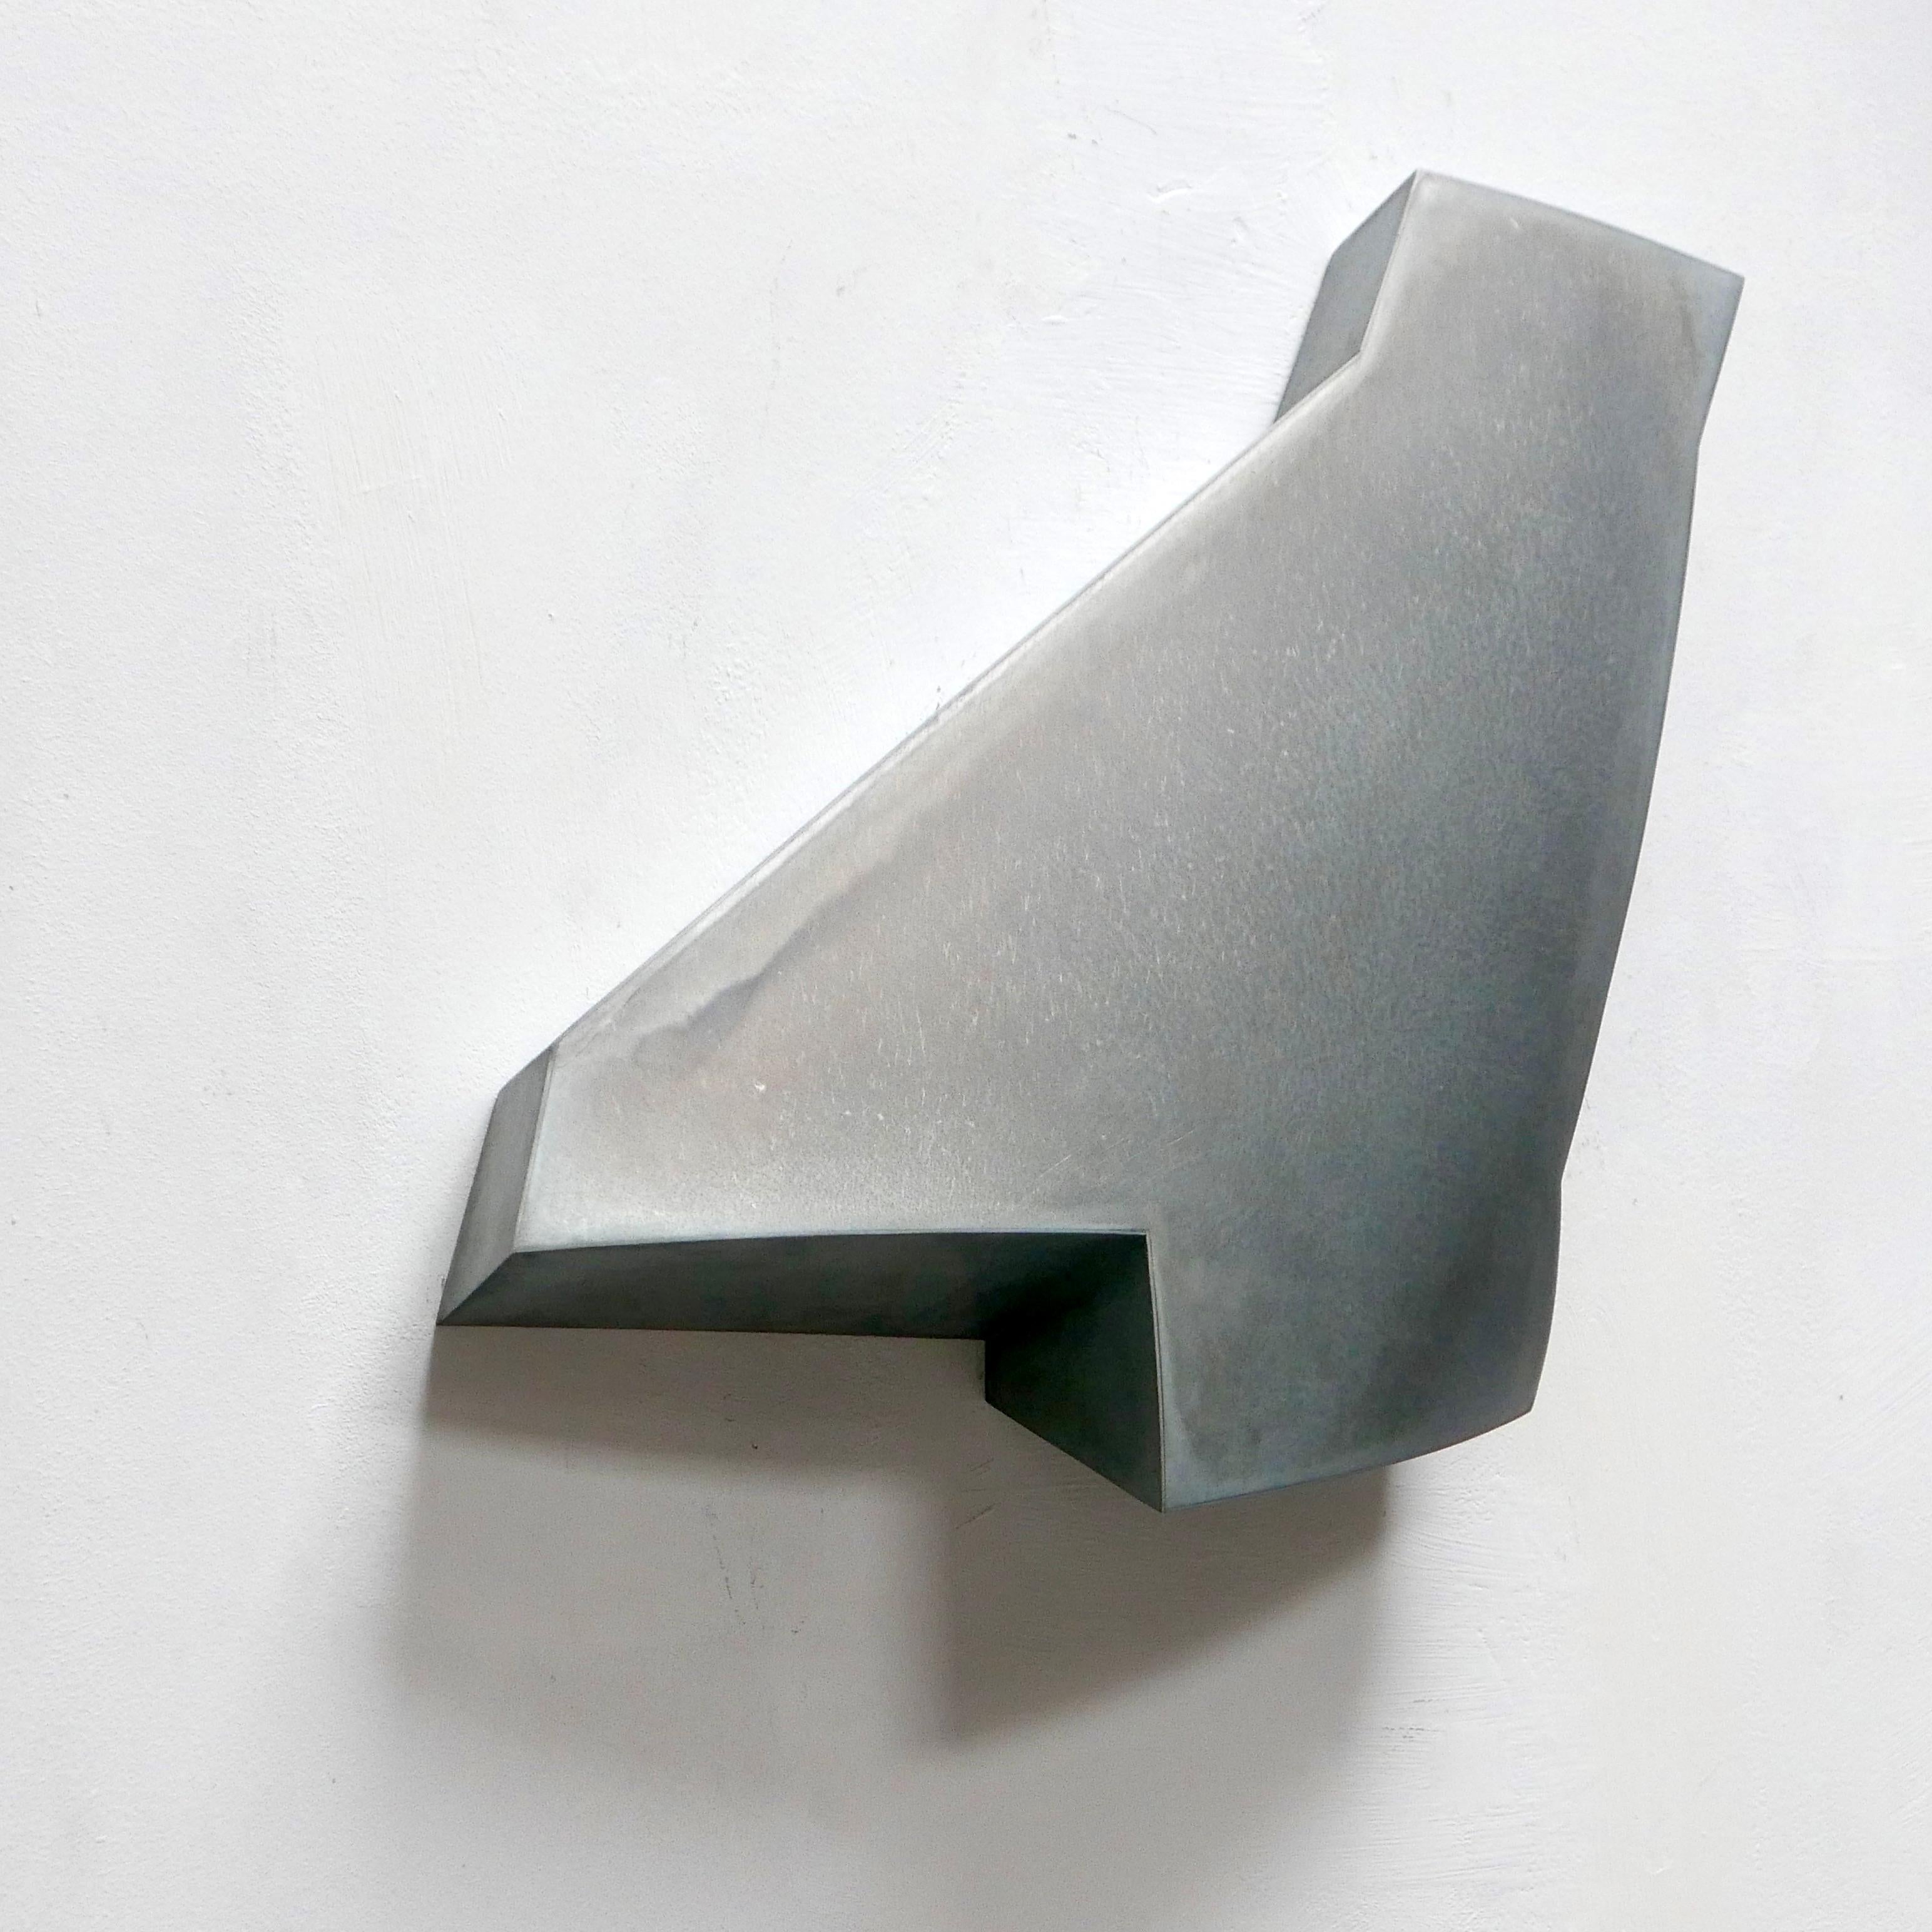 Simon Oud (né en 1958, Pays-Bas) crée des sculptures principalement en zinc, parfois combinées à des éléments en laiton. Oud n'est pas un sculpteur, car il ne taille pas dans la masse. Il ne part pas d'un volume dont il prélève des pièces, mais il